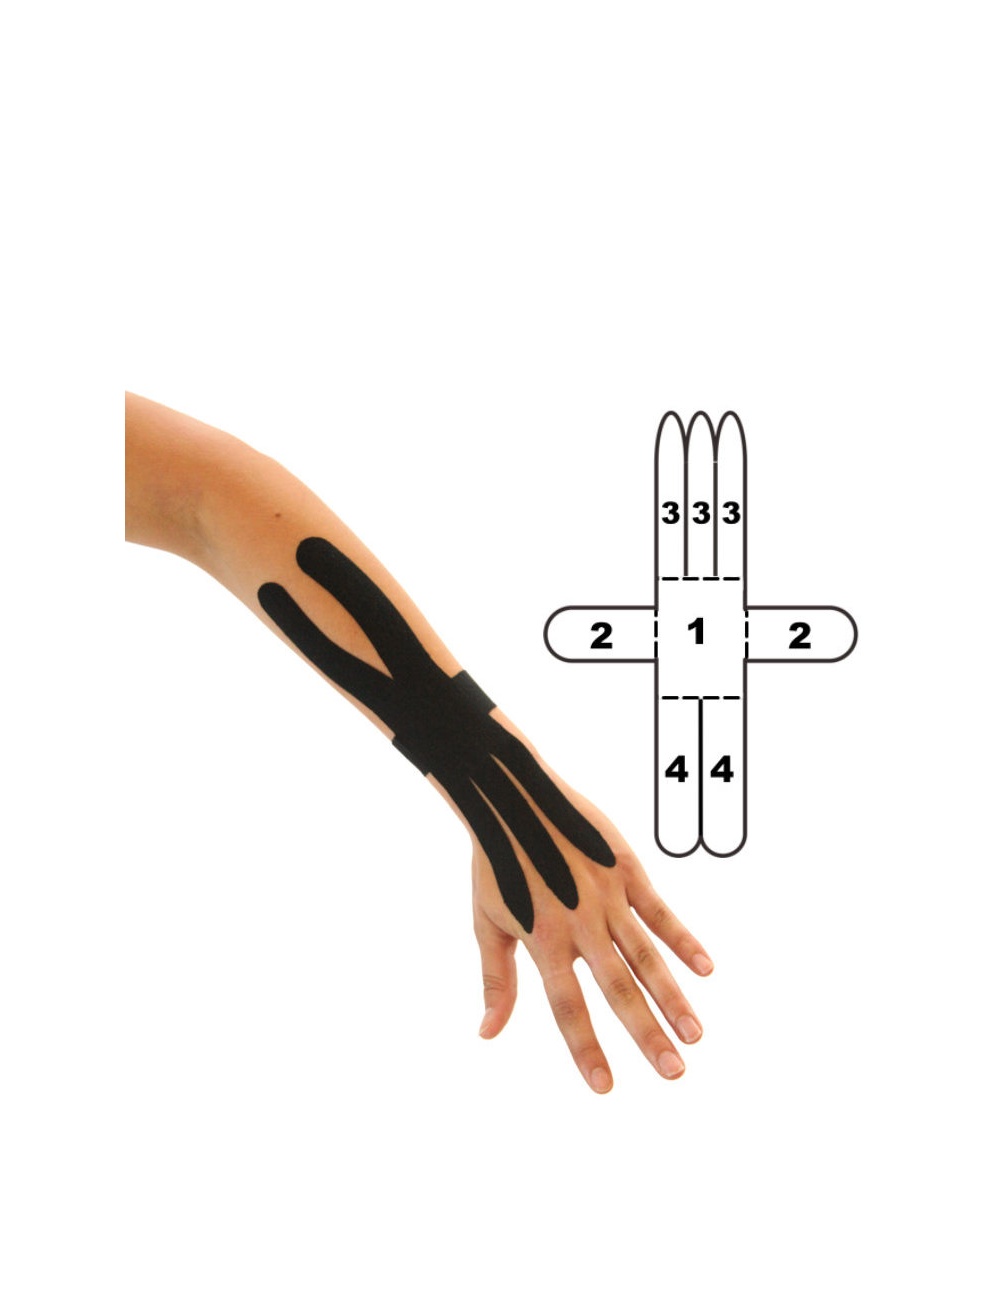 Kindmax Kinesiology Tape Wrist Support - Black